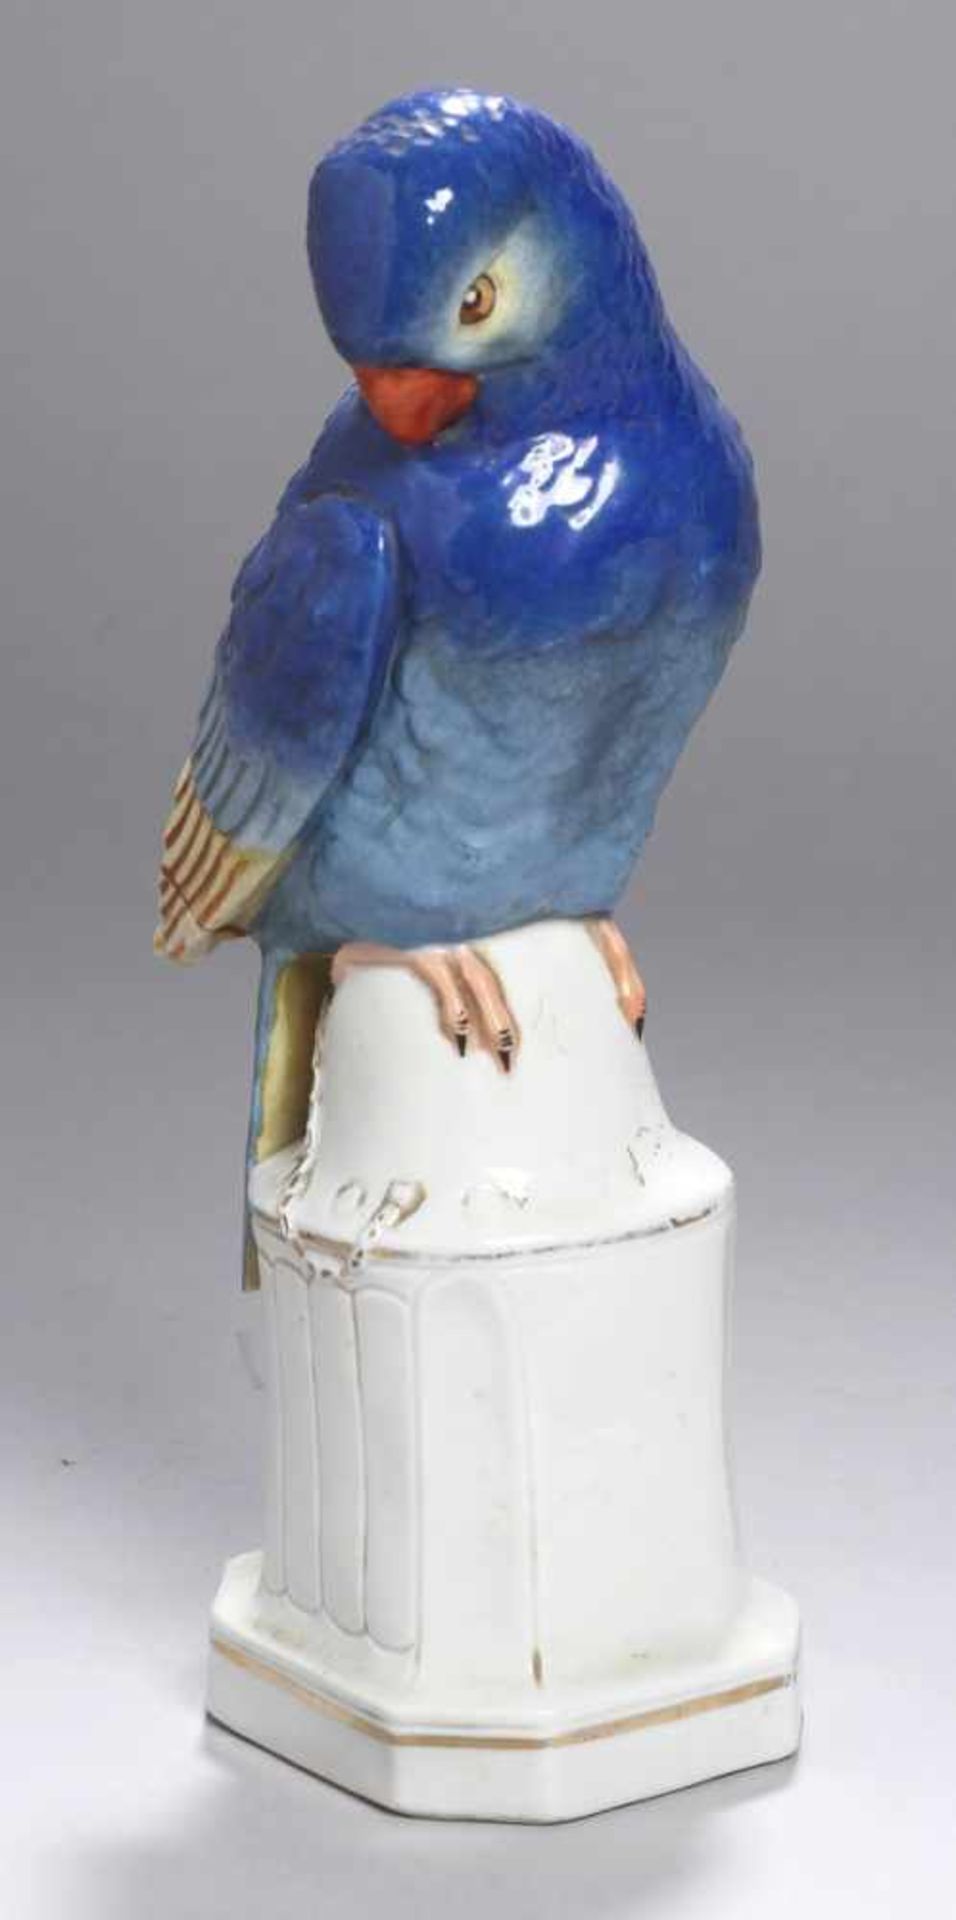 Porzellan-Tierplastik, "Papagei", wohl Gebrüder Schoenau, Swaine & Co., Hüttensteinach, um1920,